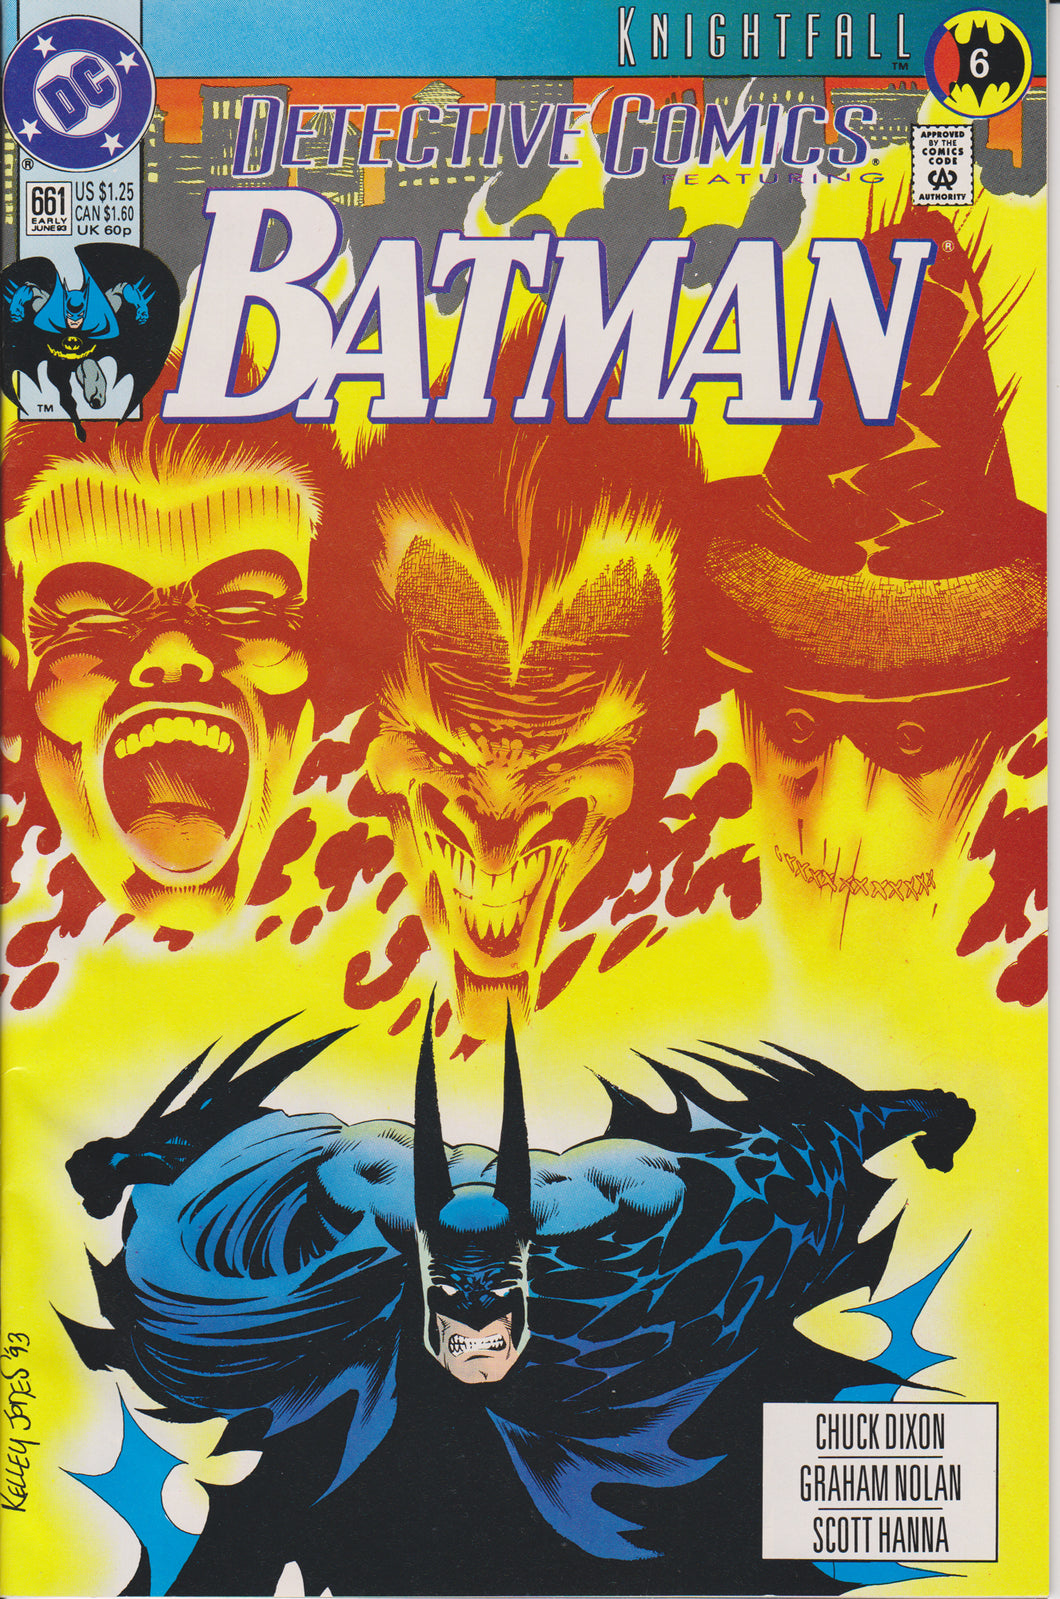 DETECTIVE COMICS #661 COMIC BOOK ~ DC Comics